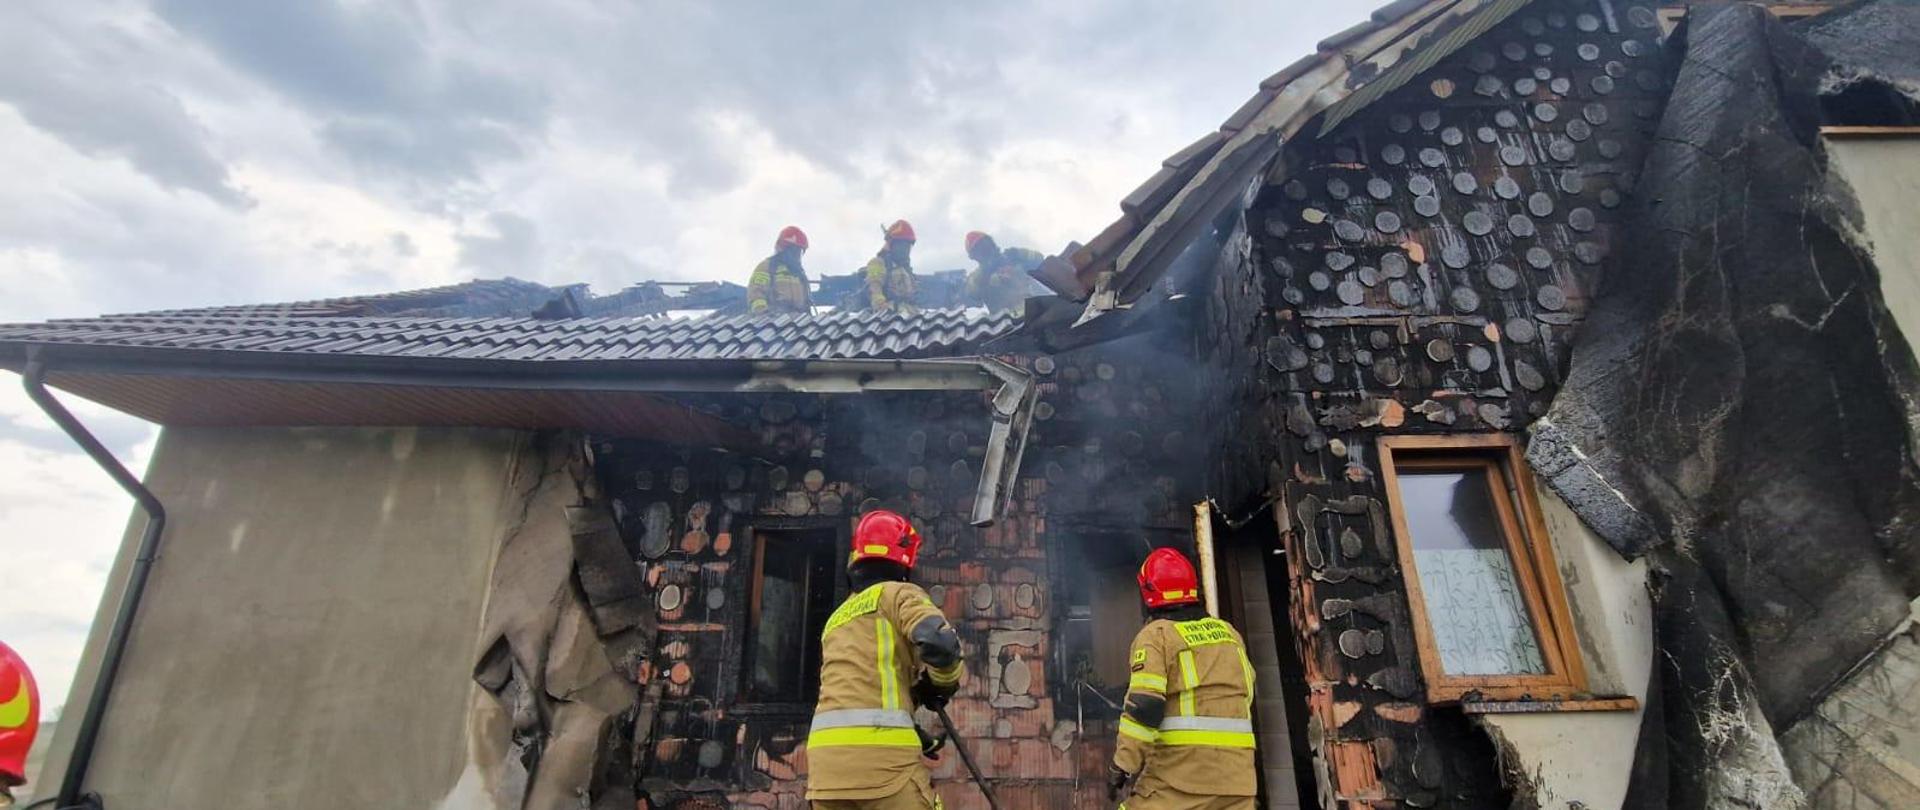 Pożar domu jednorodzinnego w trakcie budowy w miejscowości Świniary Nowe.